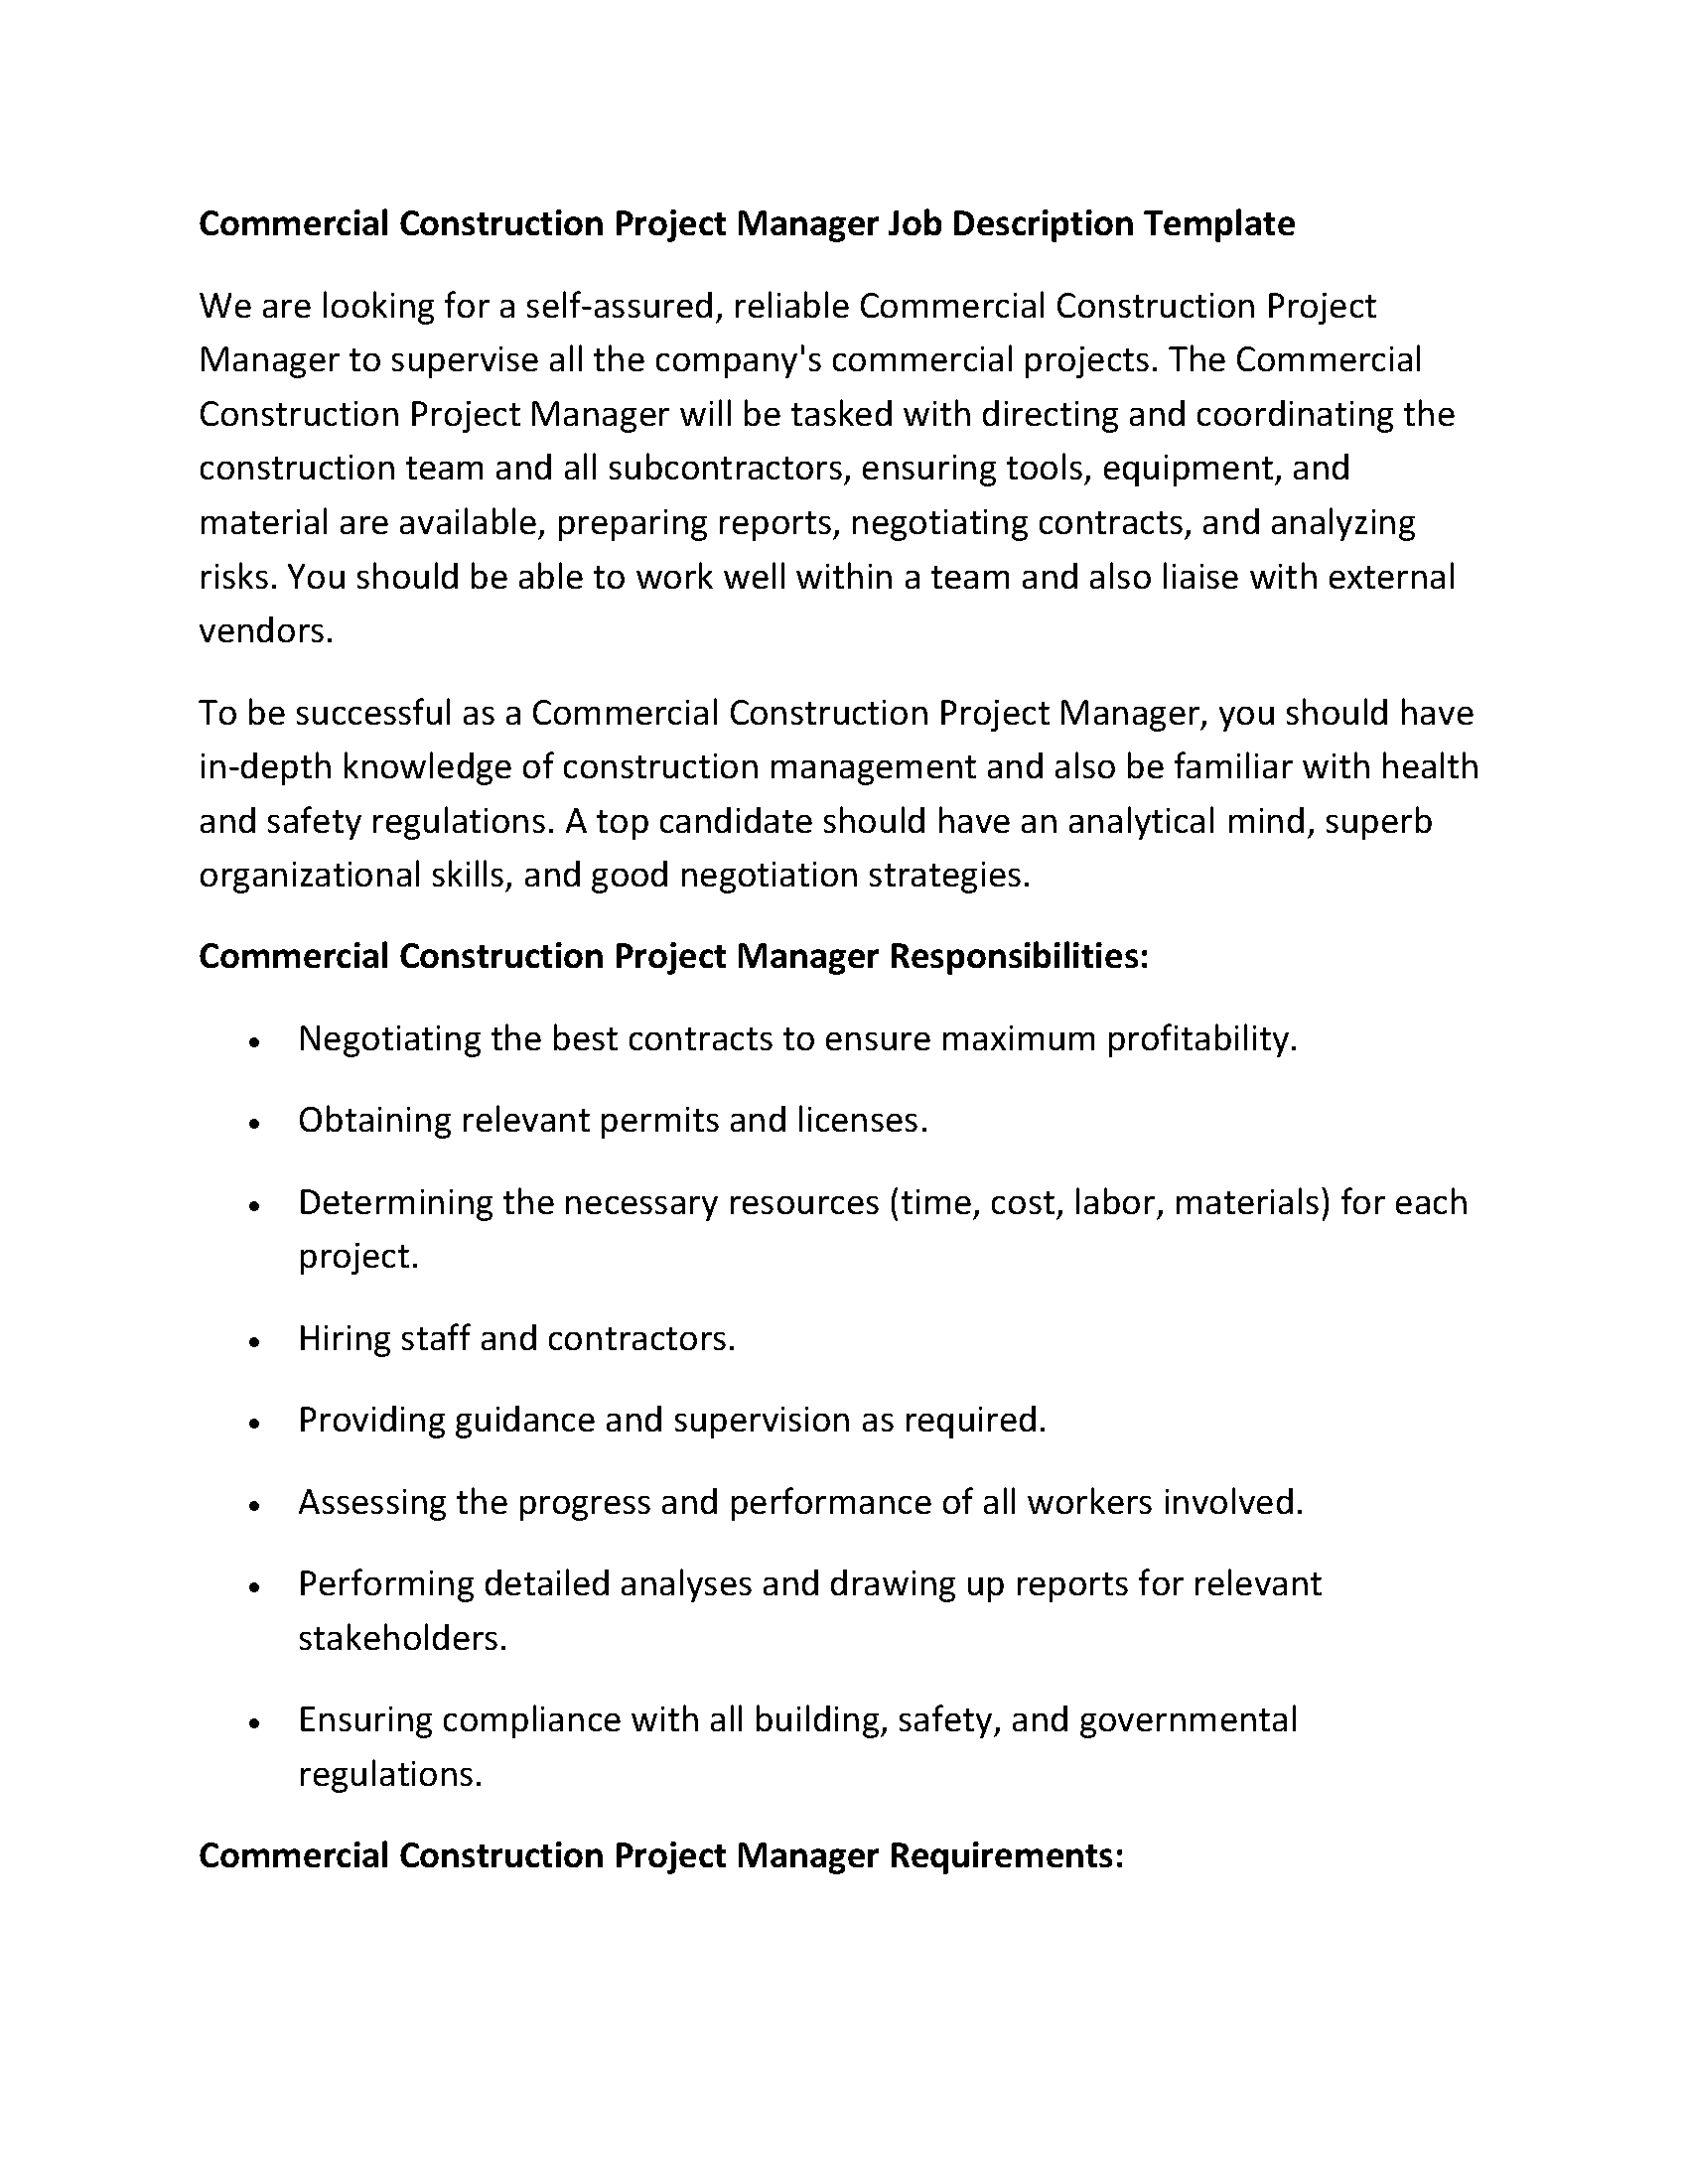 Commercial Construction Project Manager Job Description Template